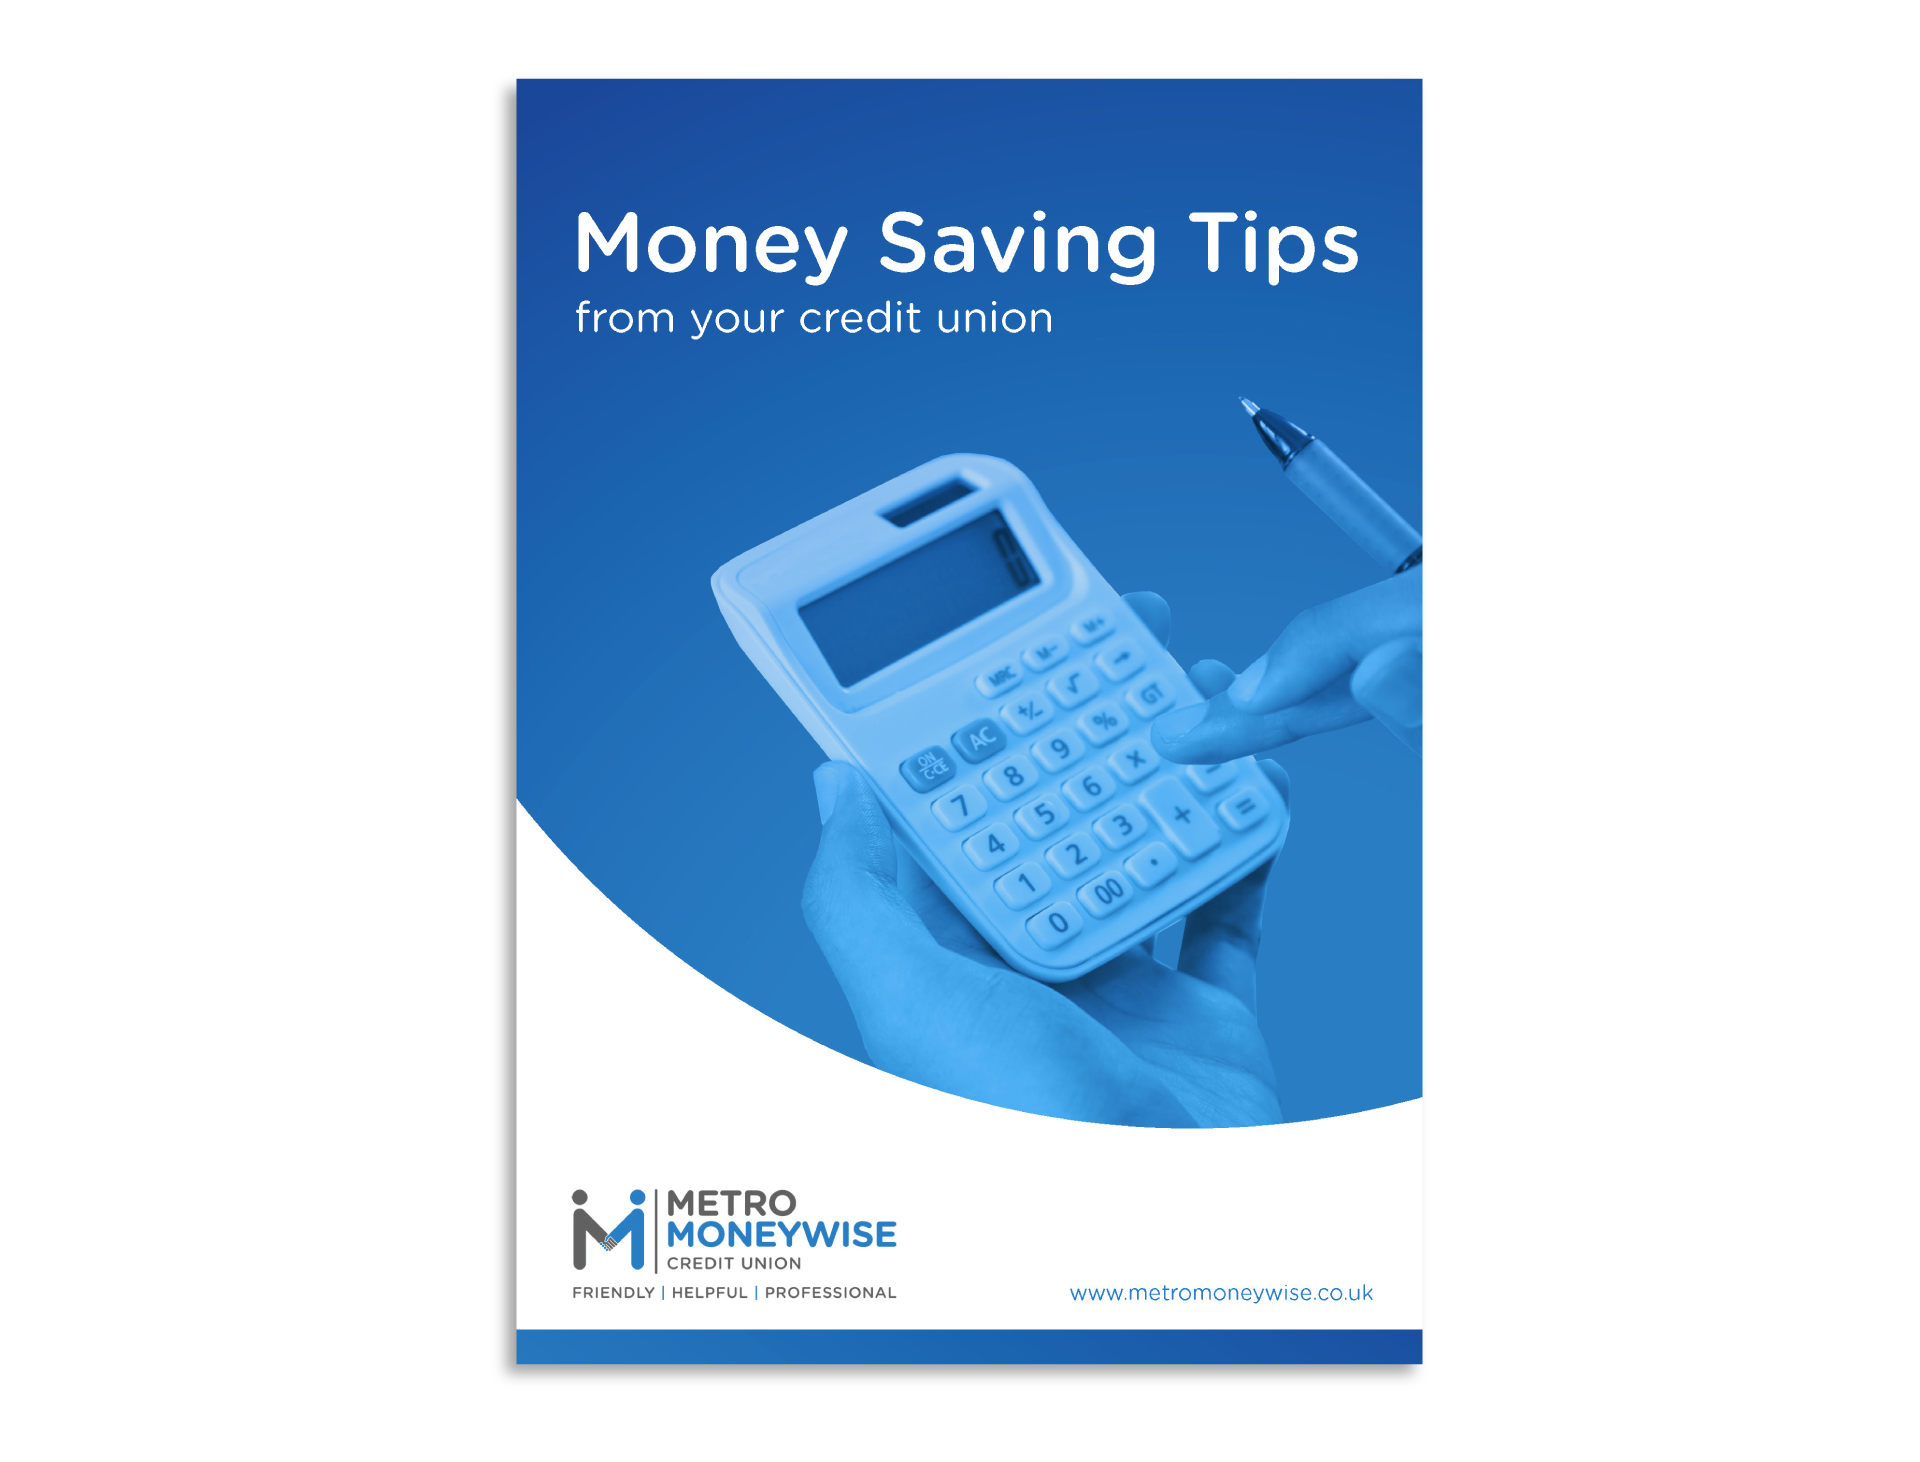 Metro Moneywise - Money saving tips 